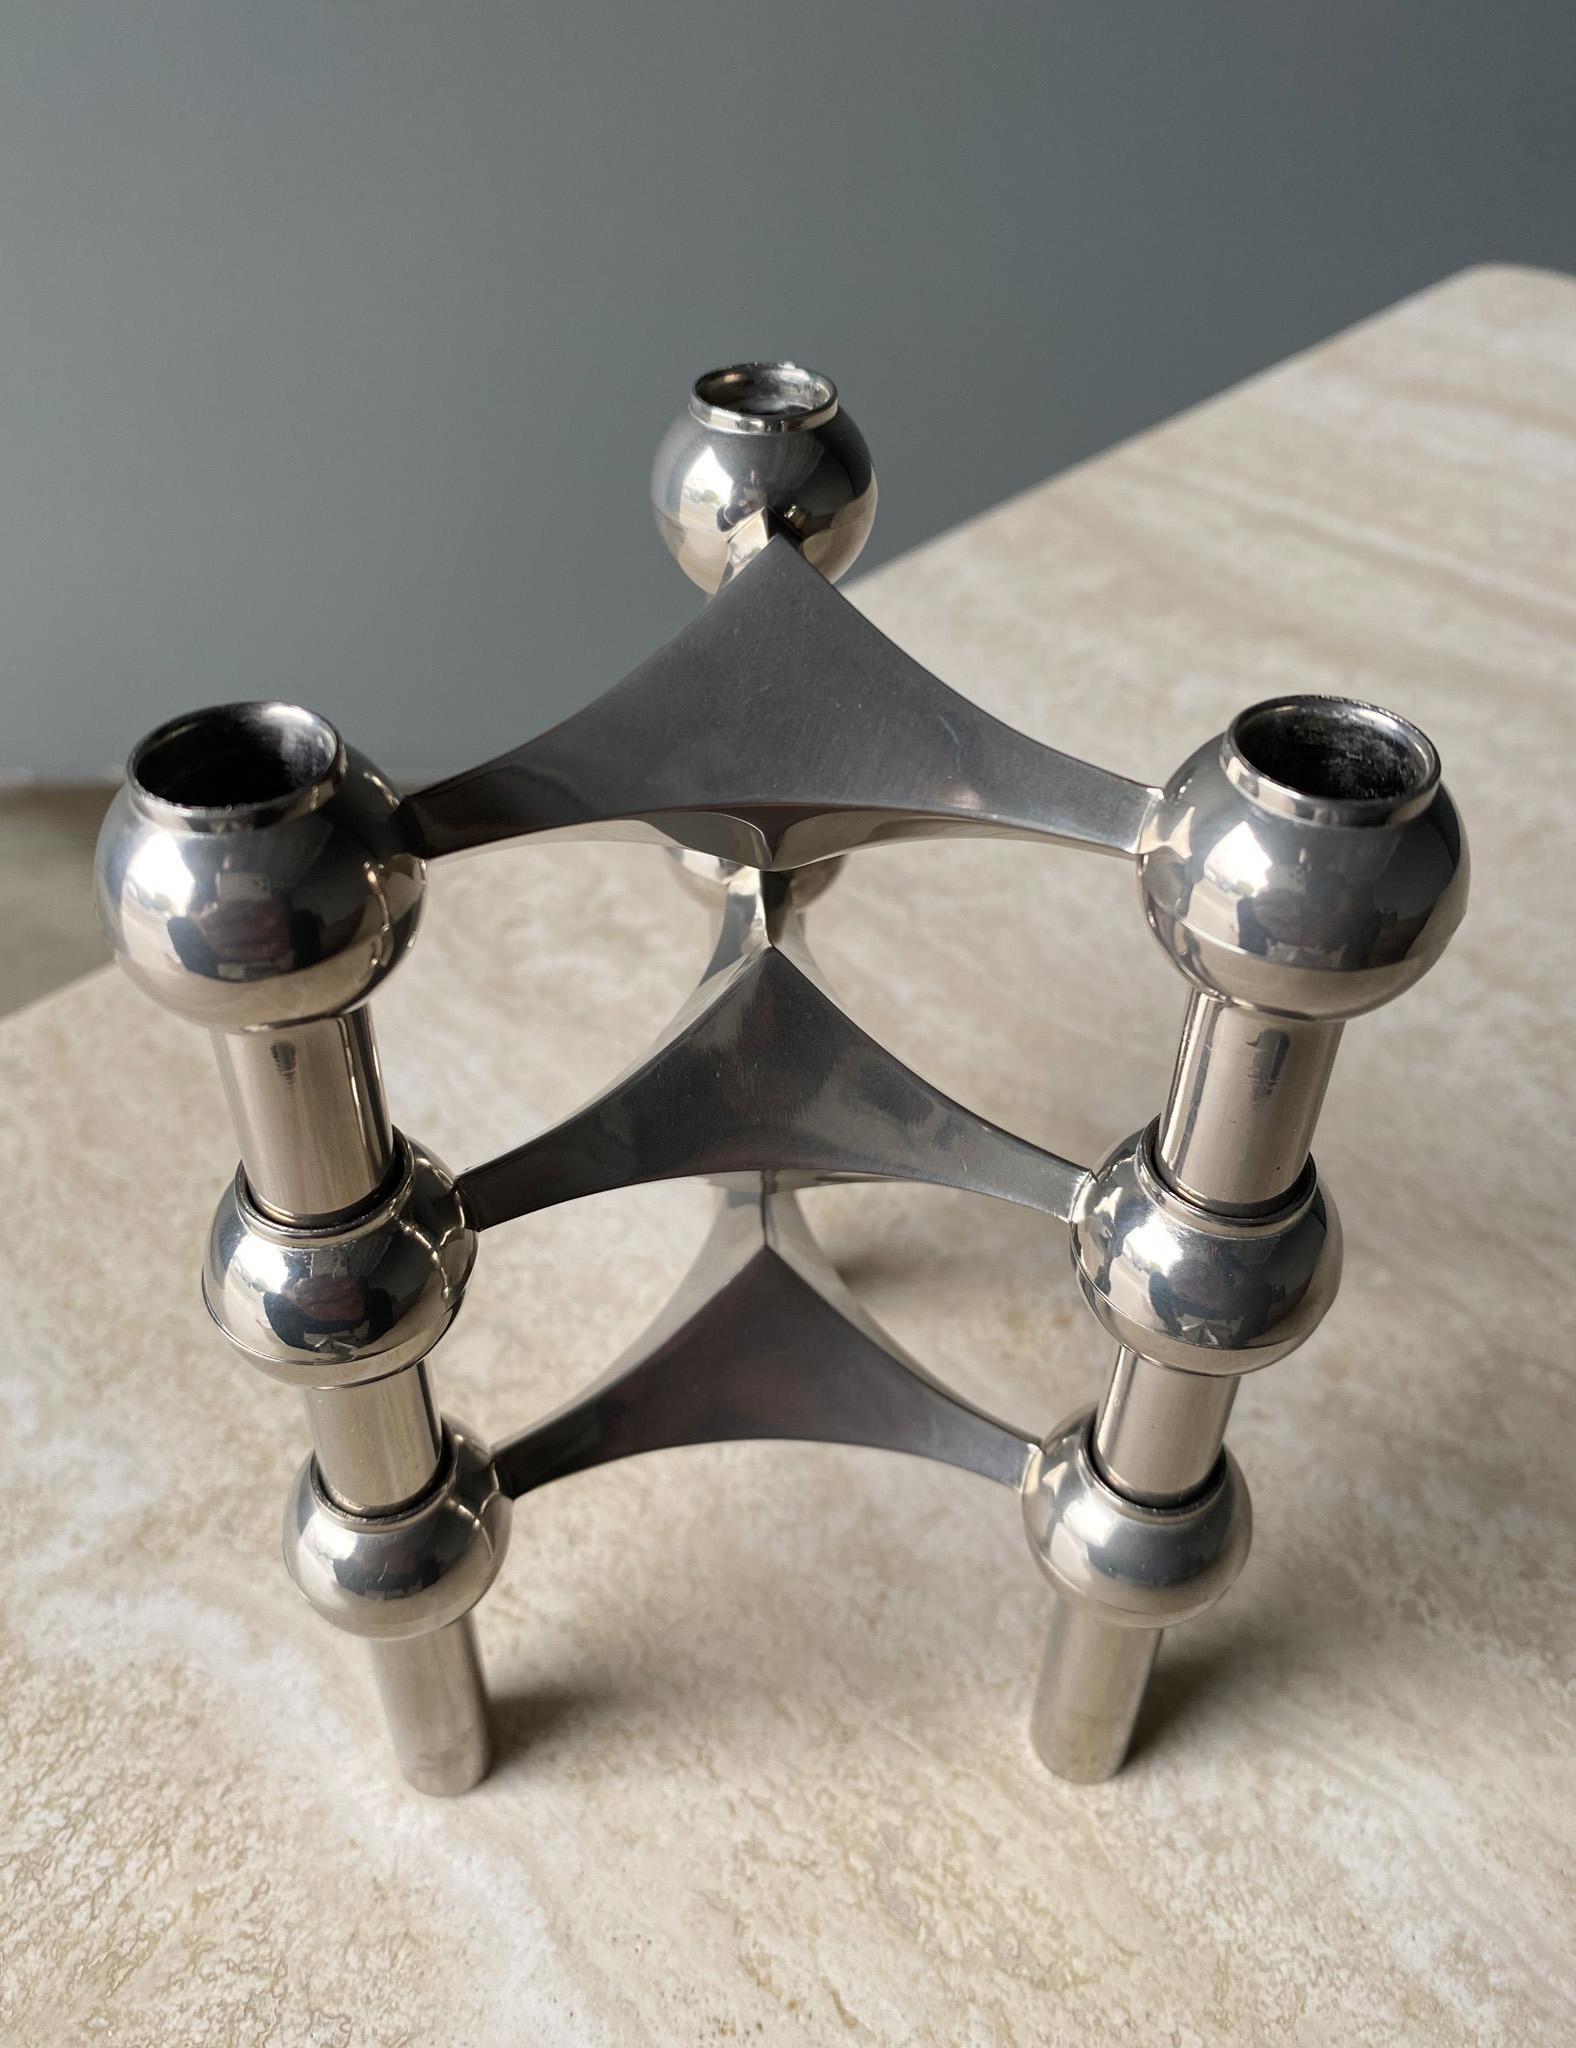 Stoff Nagel Candleholder Designed by Werner Stoff for Metalworker Hans Nagel 1